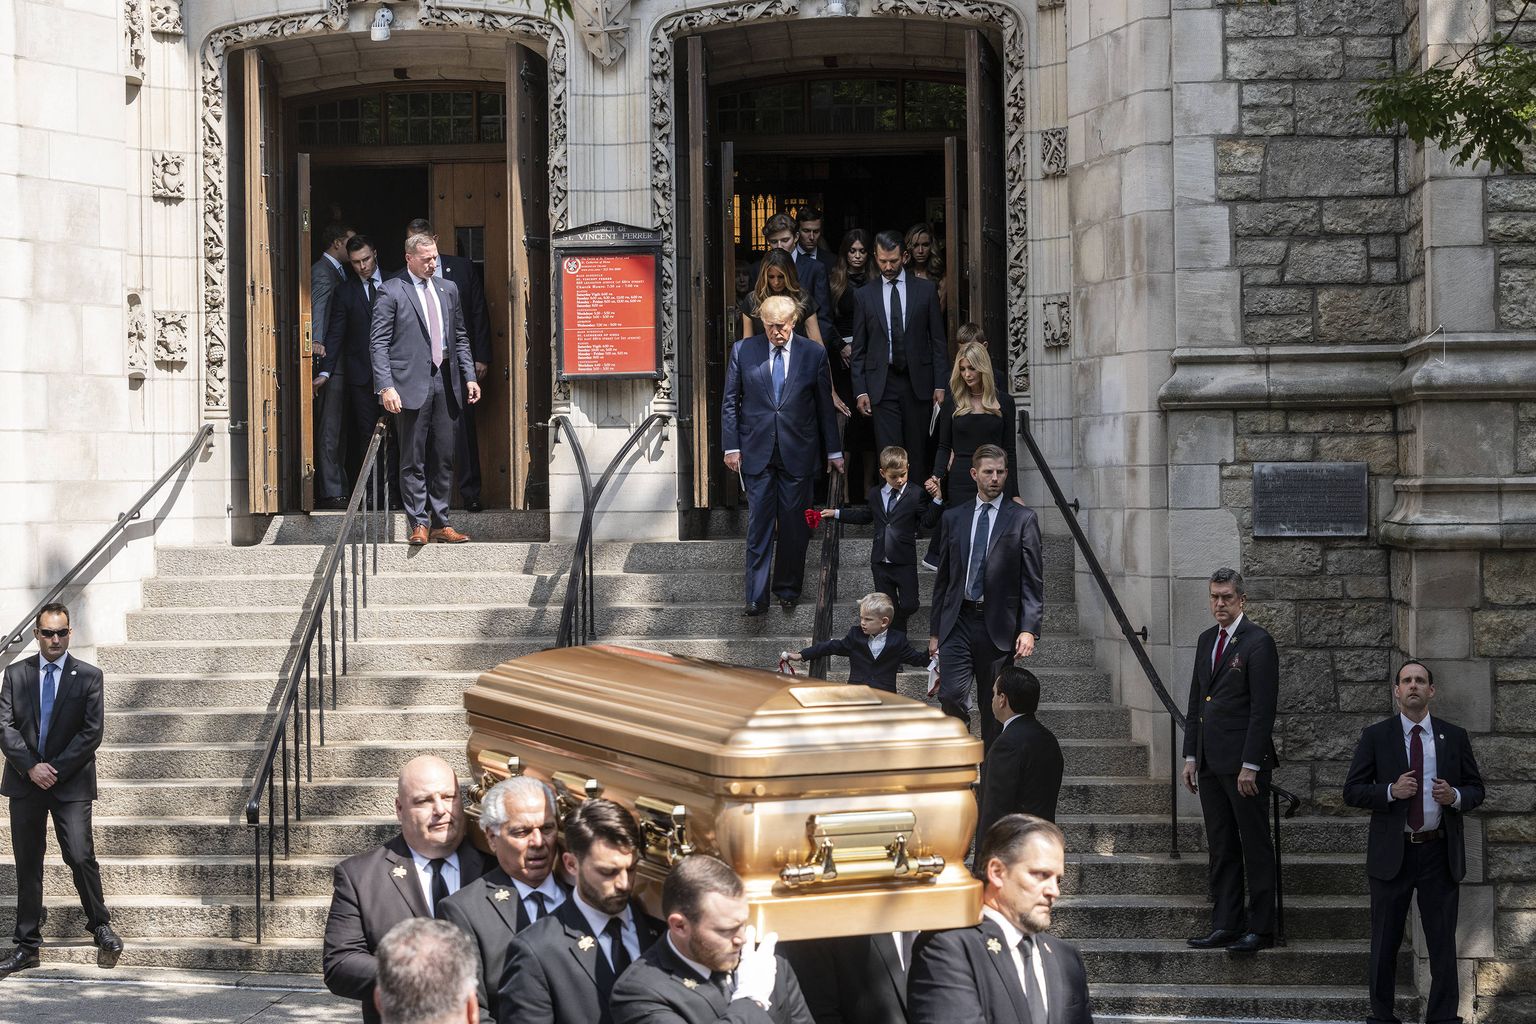 Ivana Trumpi kirst kanti 20. juulil 2022 New Yorgis Manhattanil asuvast katoliku kirikust välja, pandi autole ja sõidutati New Jersey osariigis Bedminsteris asuvale Trump Nationali golfiklubi kalmistule, kuhu Ivana maeti